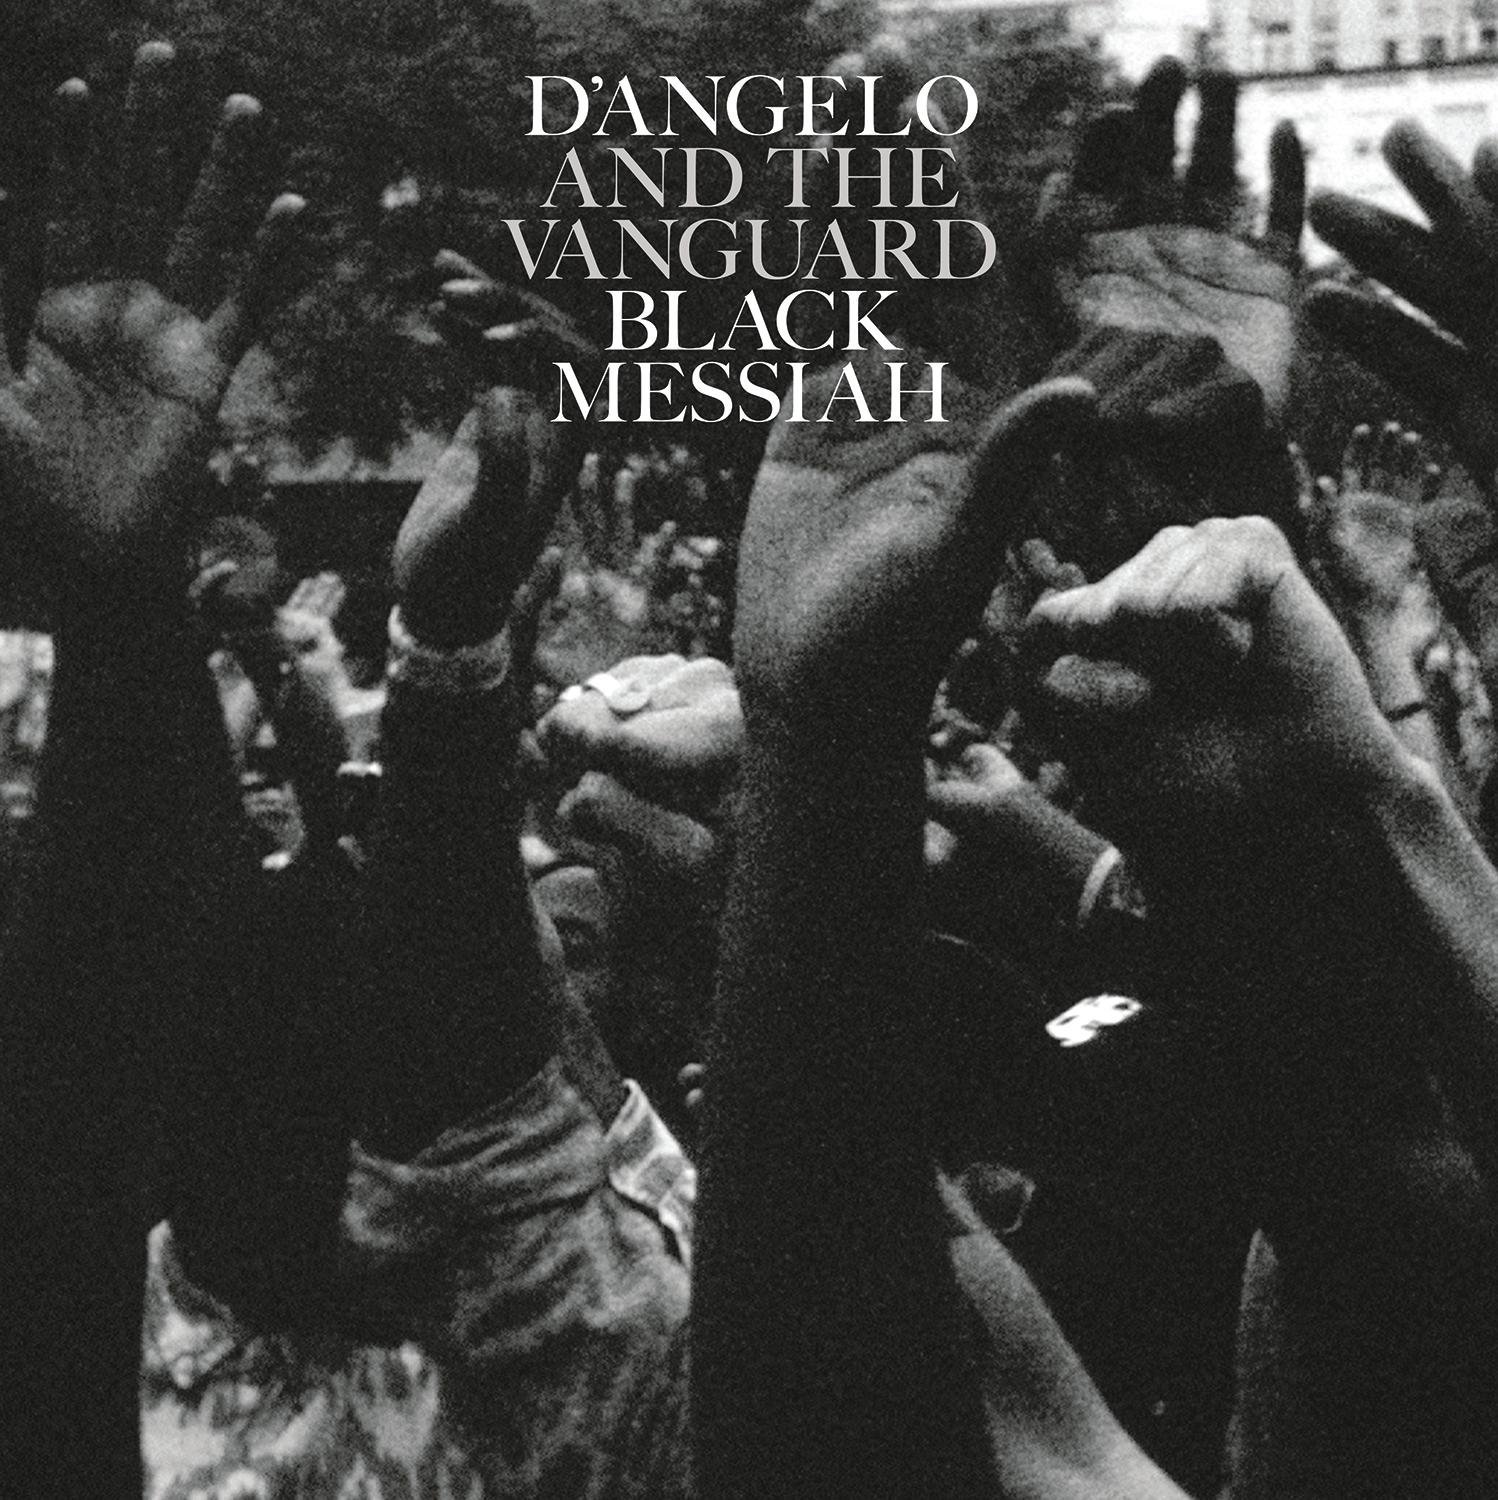 Vinile D'Angelo & The Vanguard - Black Messiah (2 Lp) NUOVO SIGILLATO, EDIZIONE DEL 09/03/2015 SUBITO DISPONIBILE